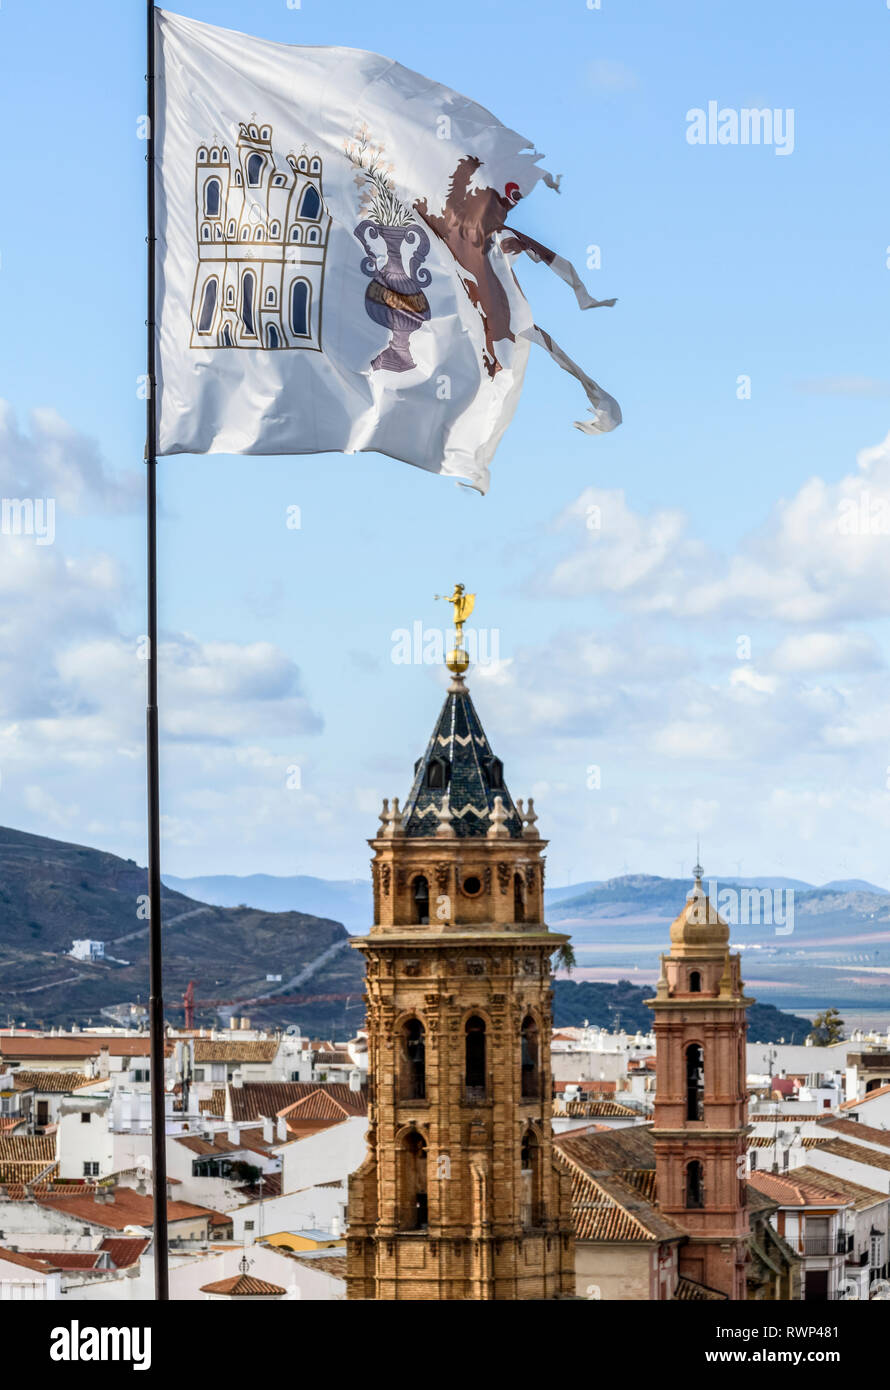 La città di Antequera con torri della chiesa e un RIP, weathered bandiera in primo piano; Antequera, Malaga, Spagna Foto Stock